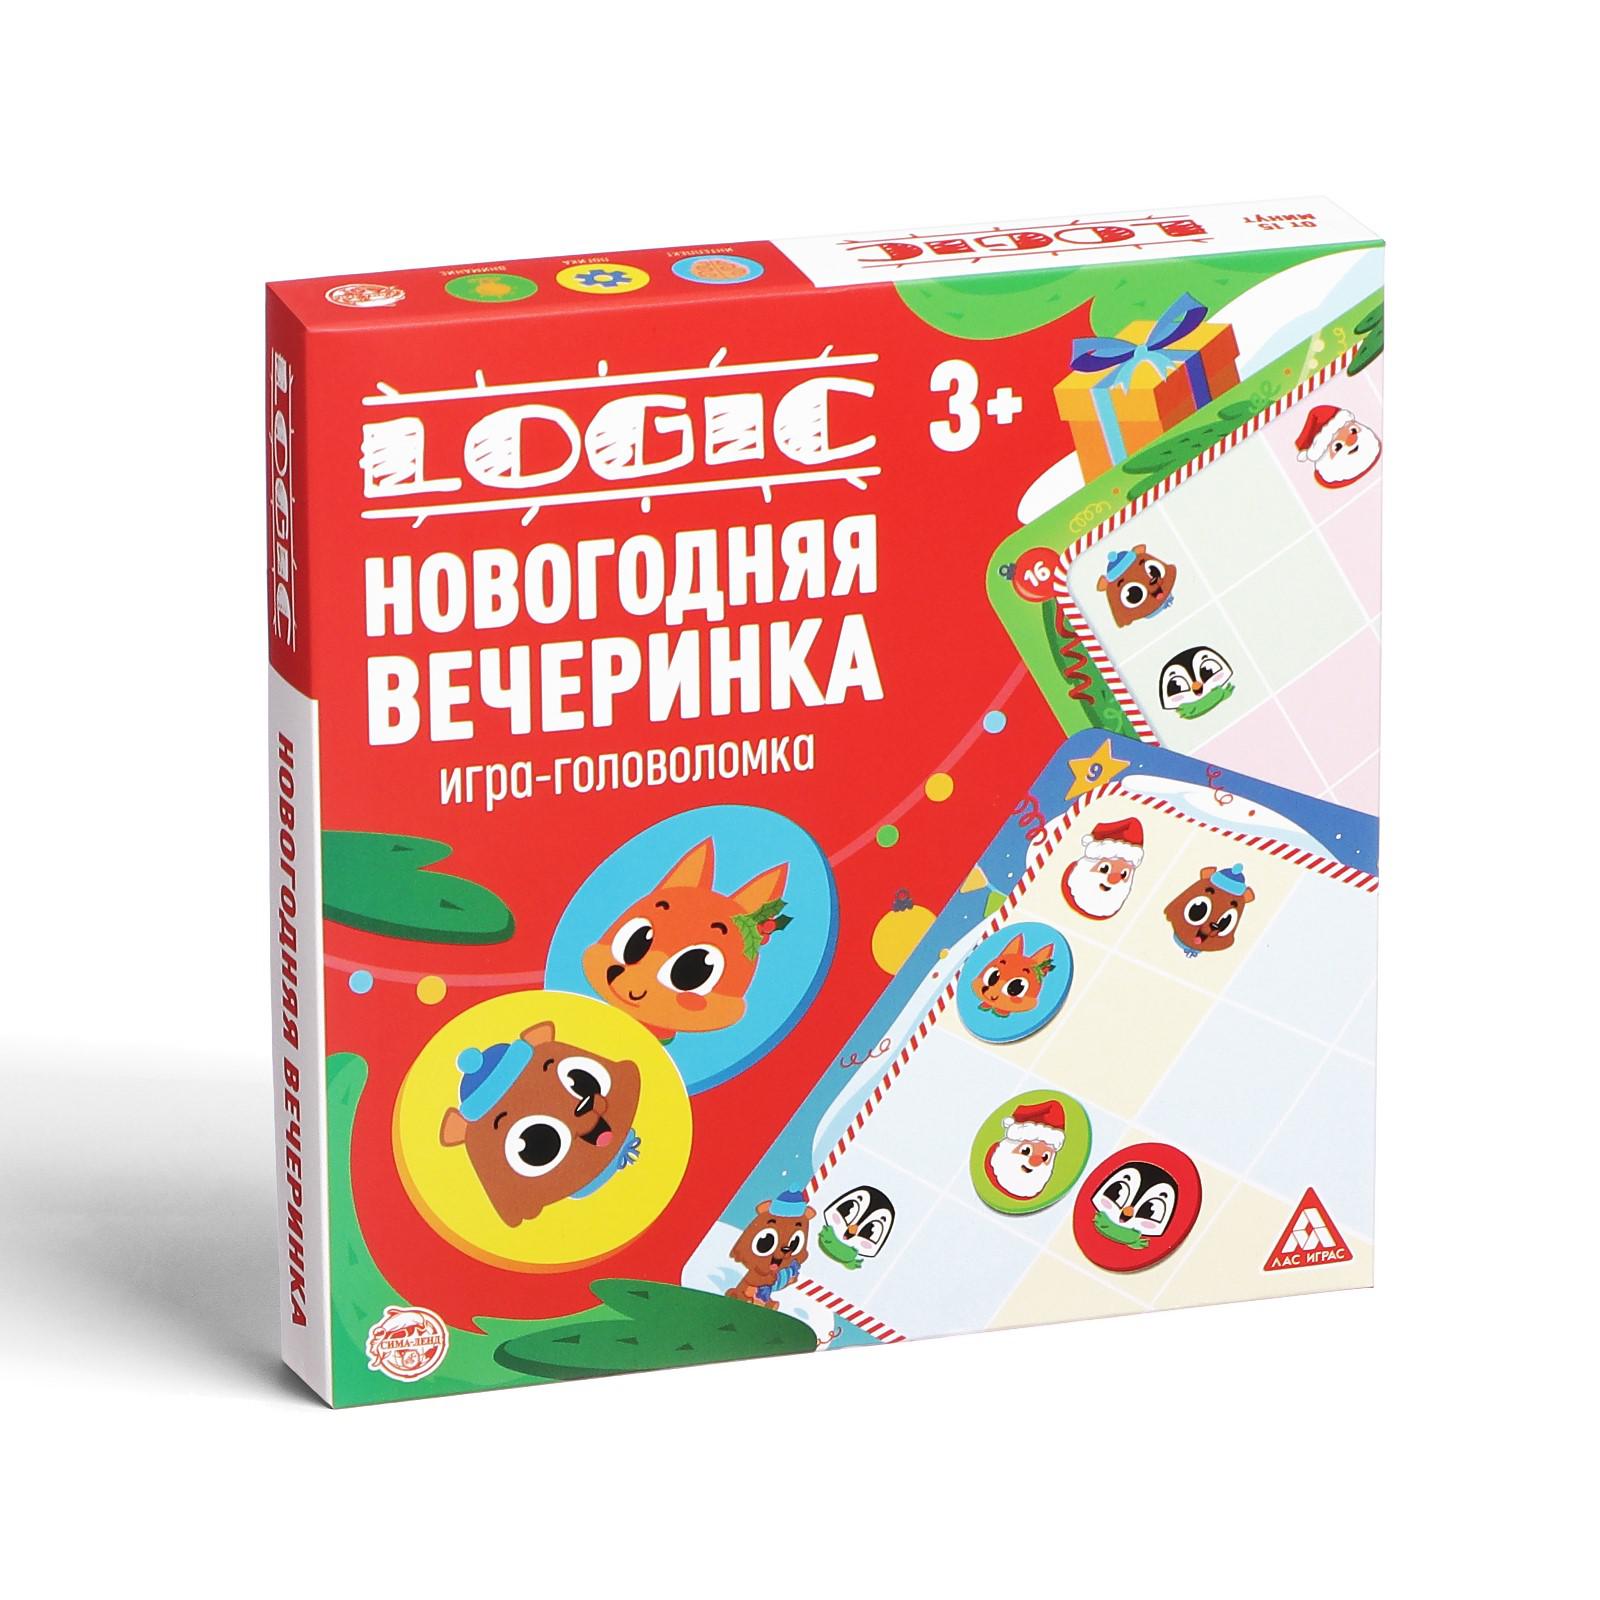 Игра-головоломка Лас Играс «Logic. Новогодняя вечеринка» 15 карт 3+ - фото 5